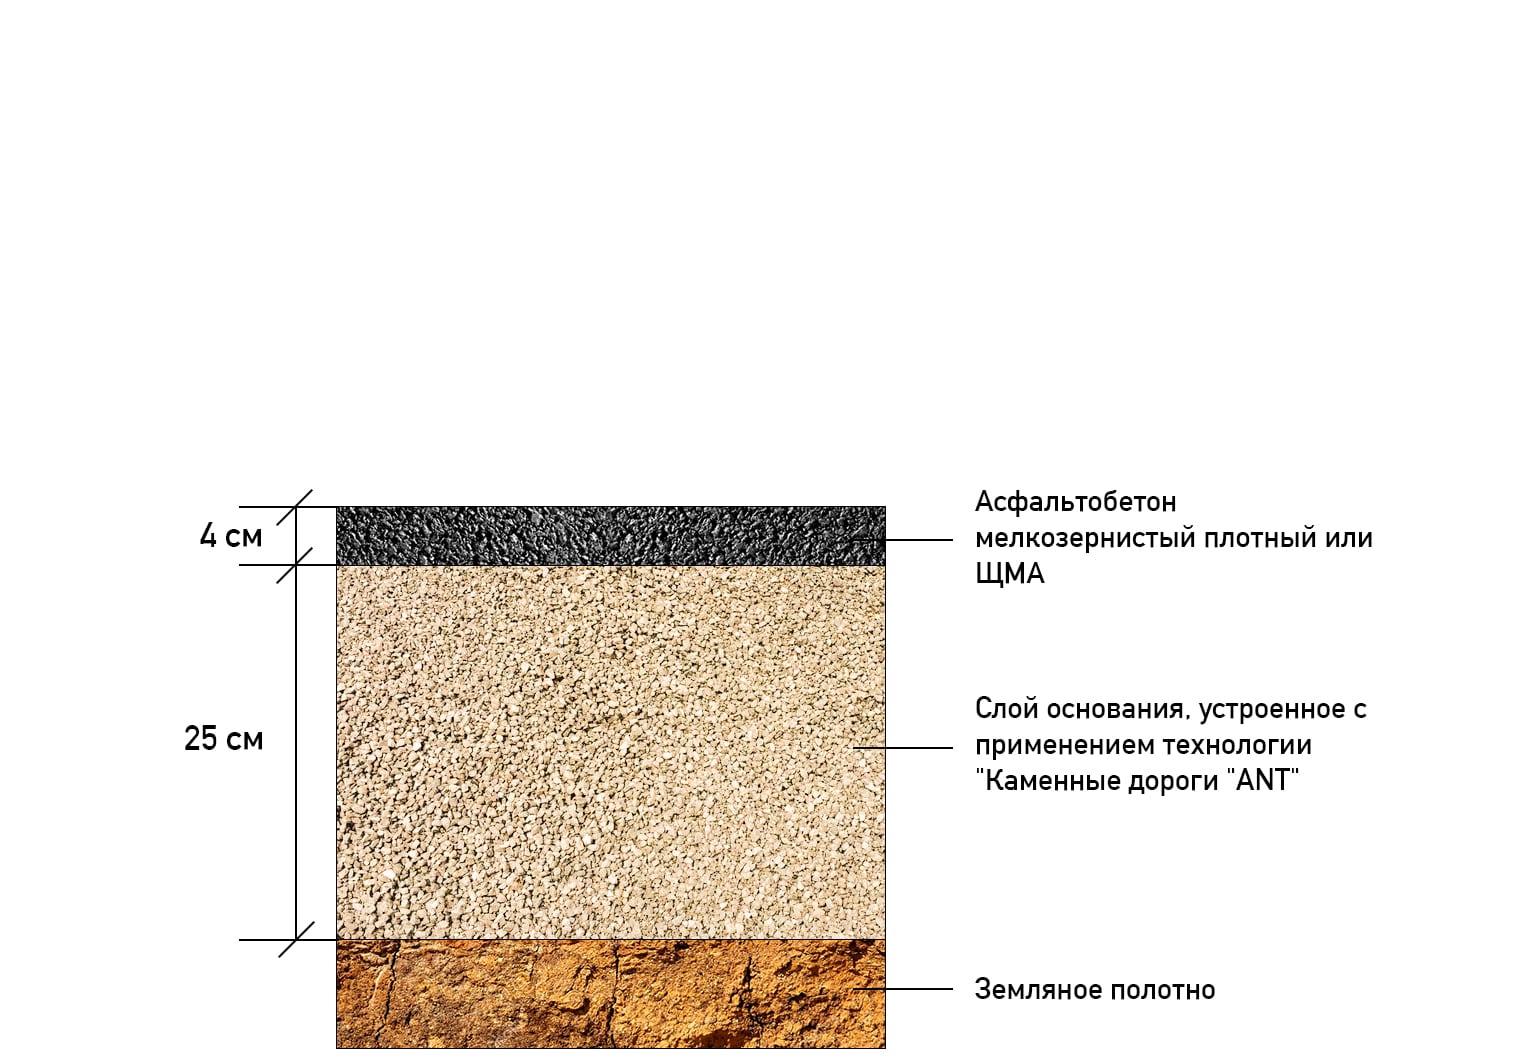 Применение технологии «Каменные дороги «ANT»